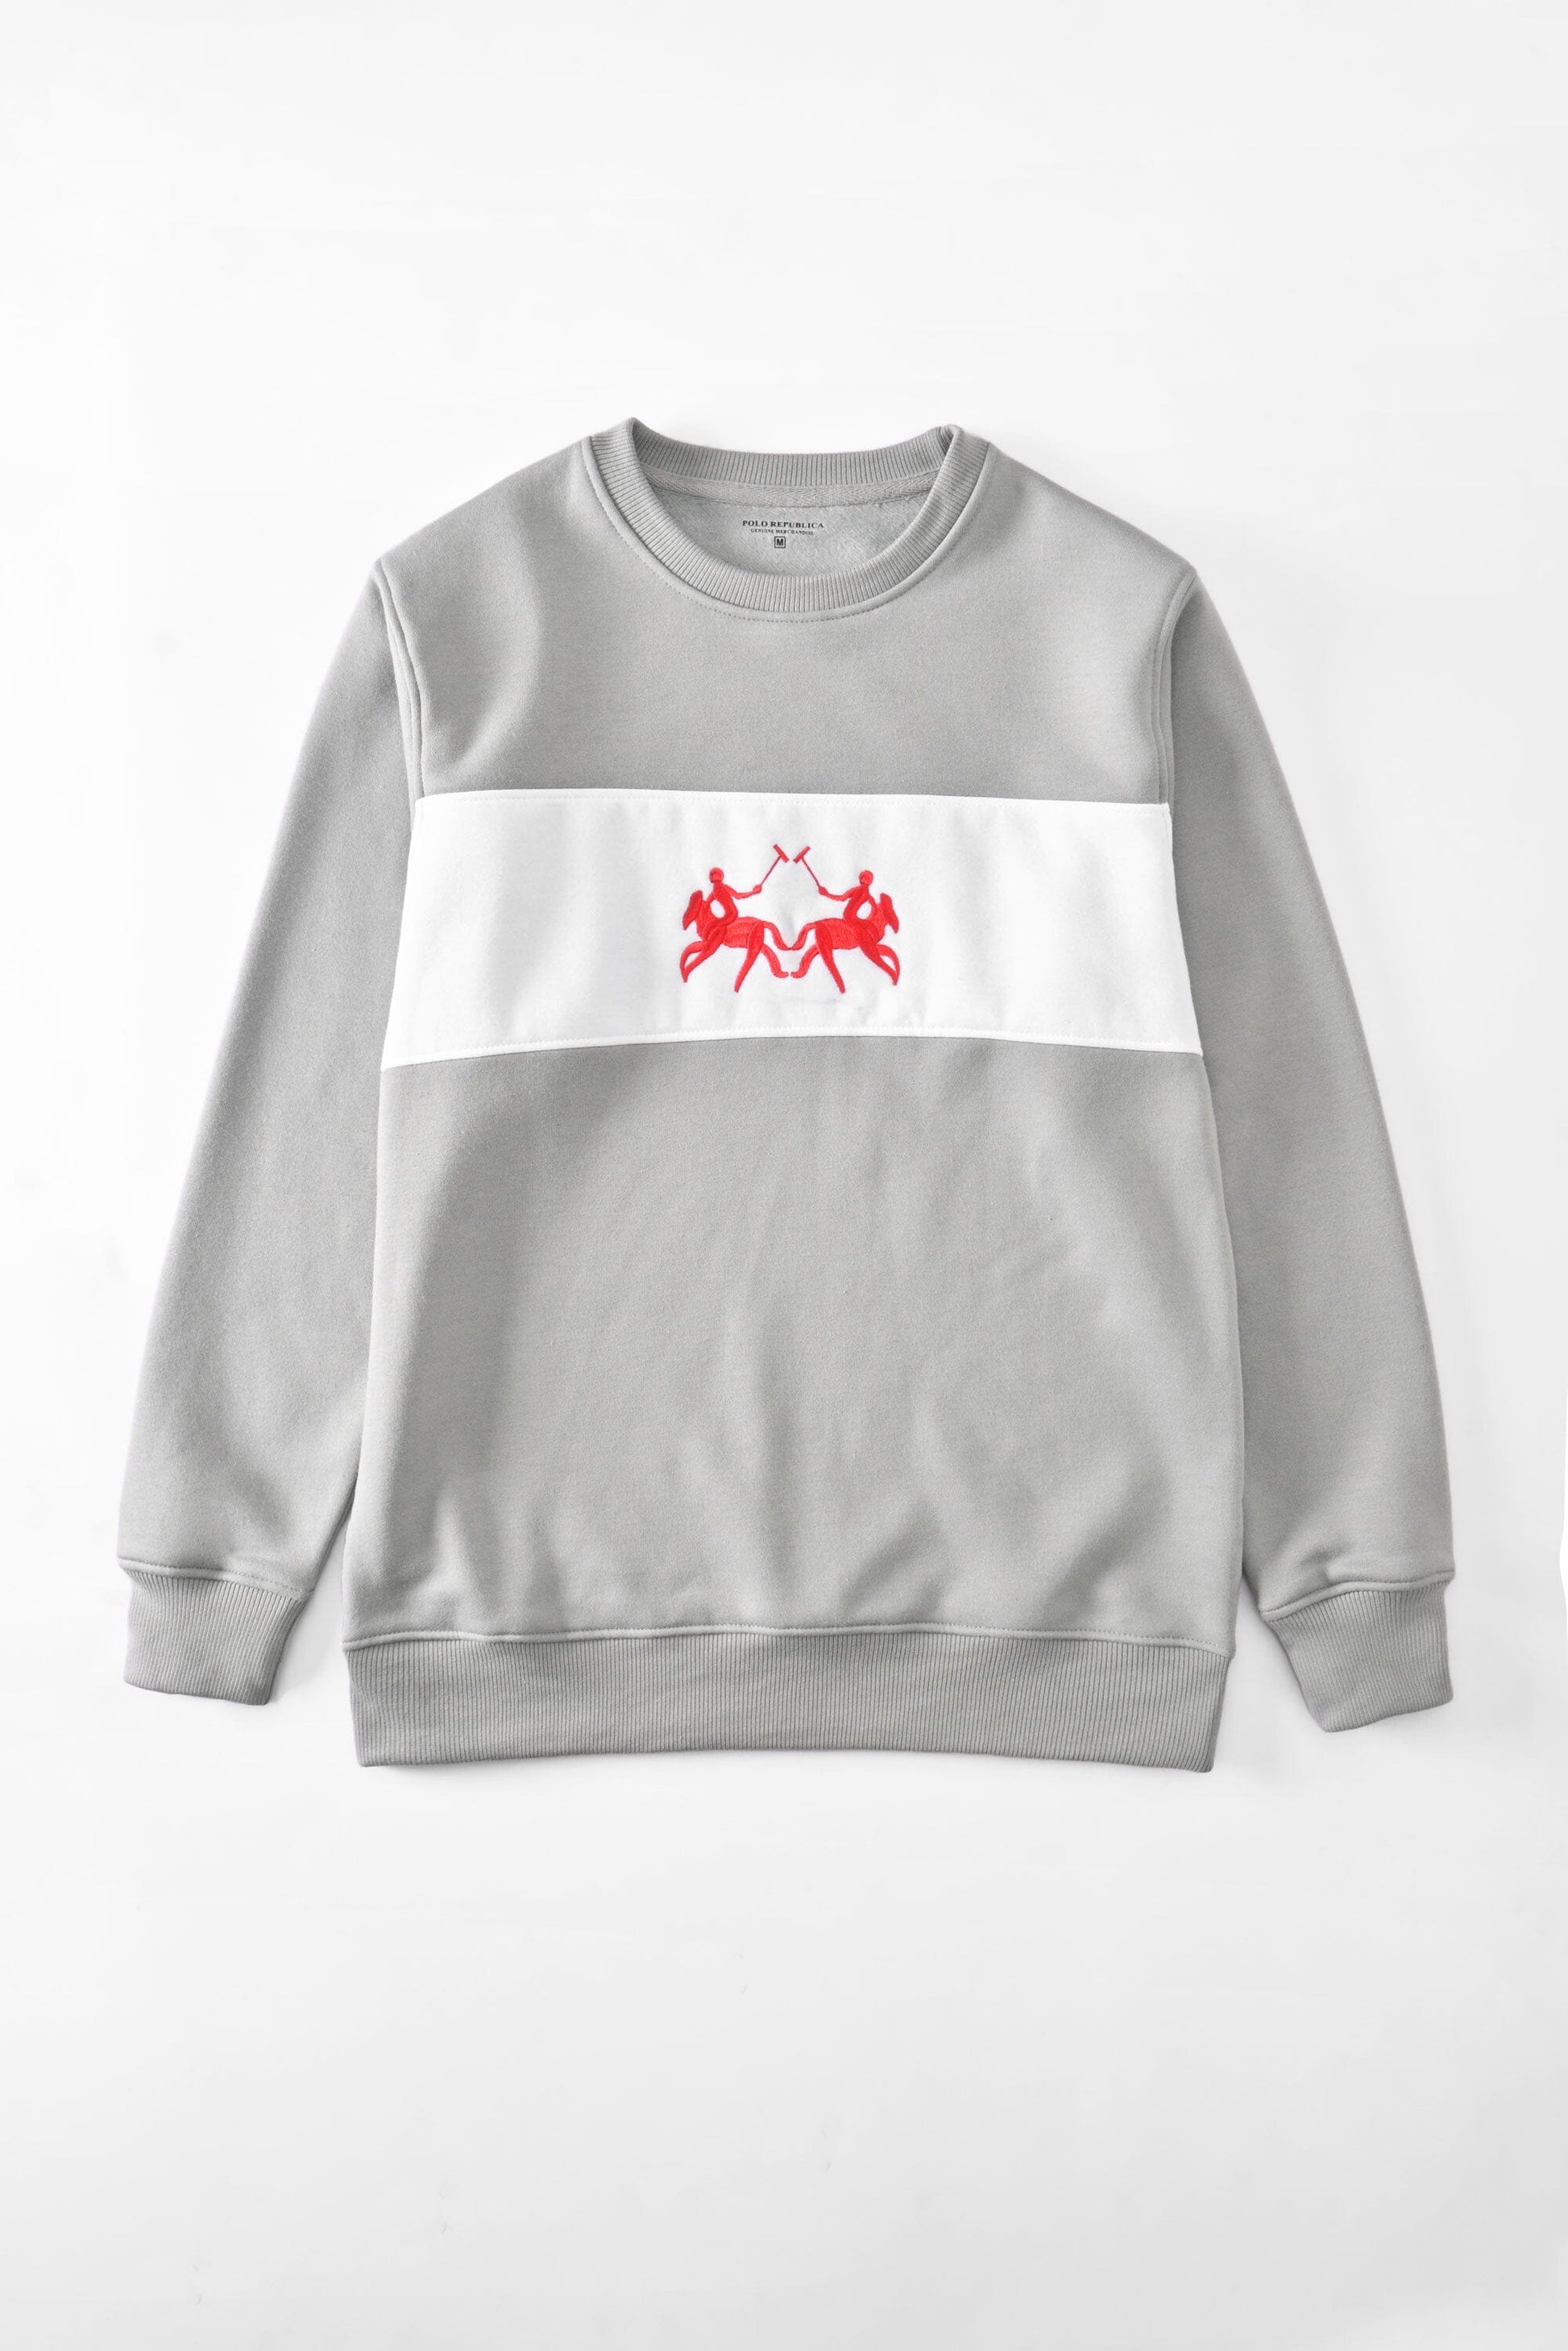 Polo Republica Men's Panel Design Double Horse Embroidered Fleece Sweat Shirt Men's Sweat Shirt Polo Republica 